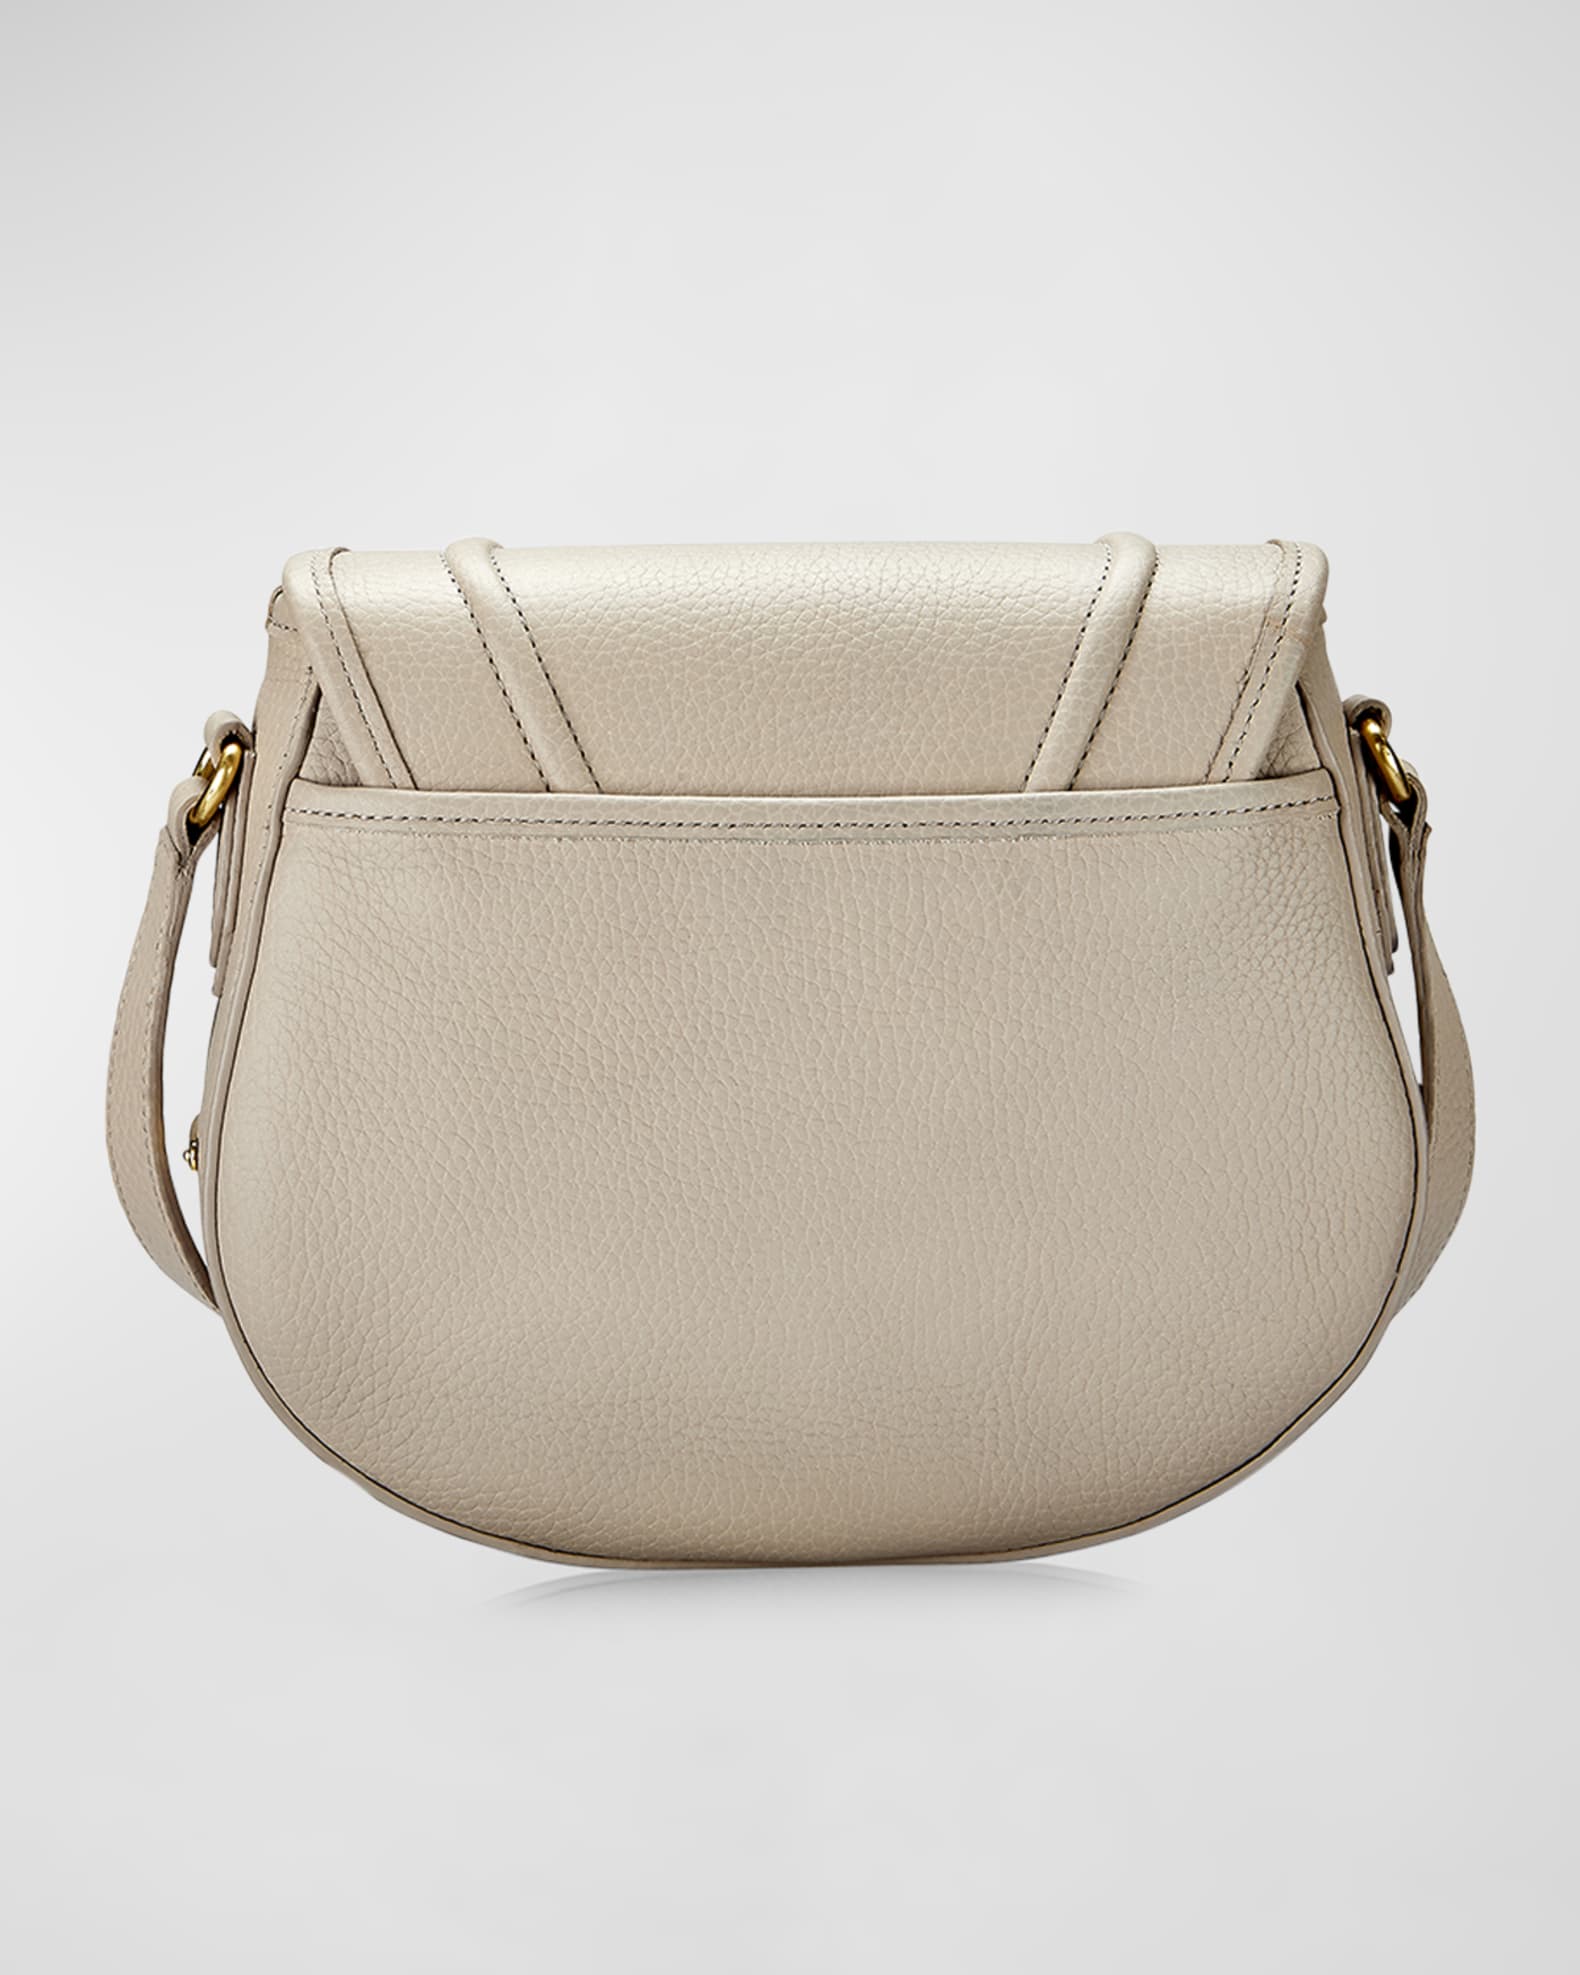 Gigi New York Jenni Saddle Leather Crossbody Bag | Neiman Marcus